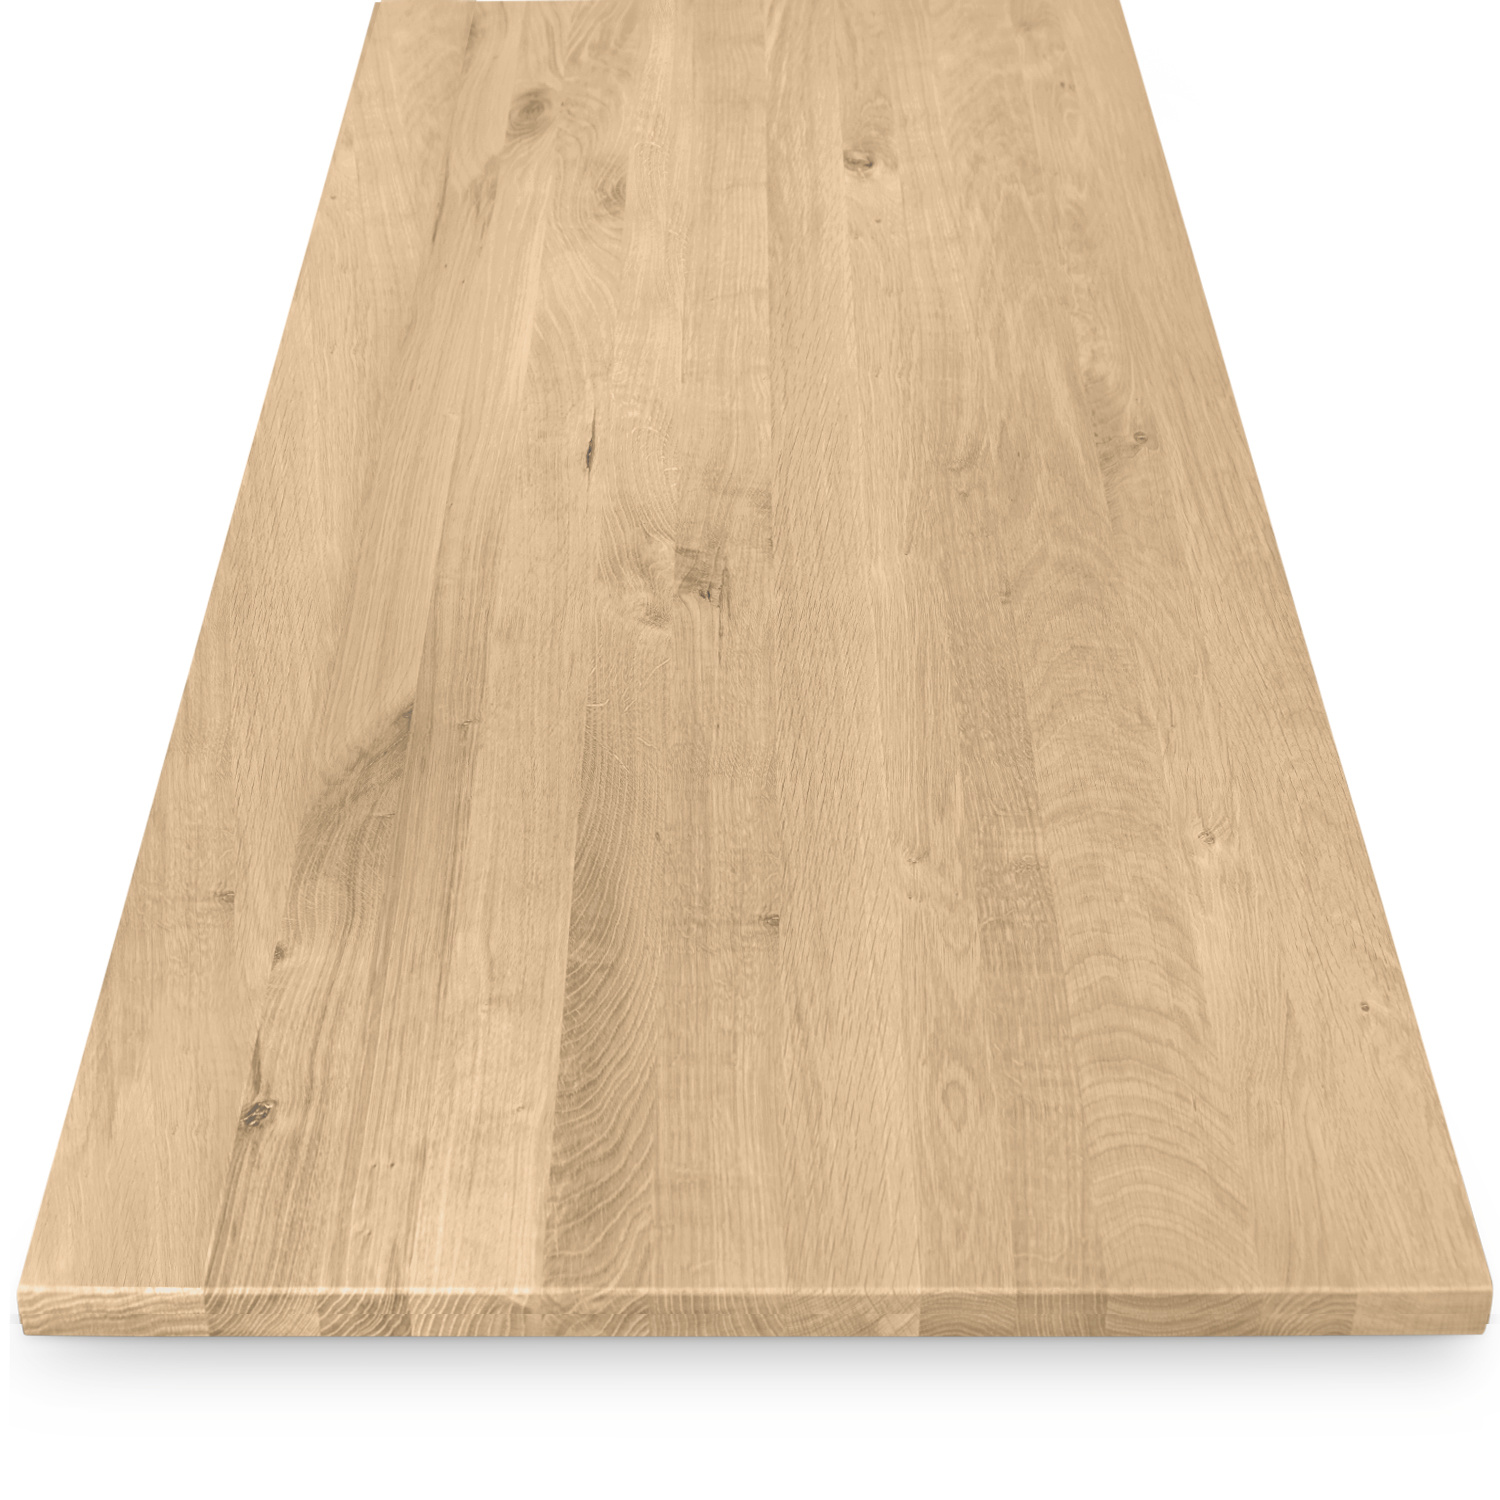  Tischplatte Eiche nach Maß - 2 cm dick - Eichenholz rustikal - Eiche Tischplatte massiv - verleimt & künstlich getrocknet (HF 8-12%) - 50-120x50-300 cm